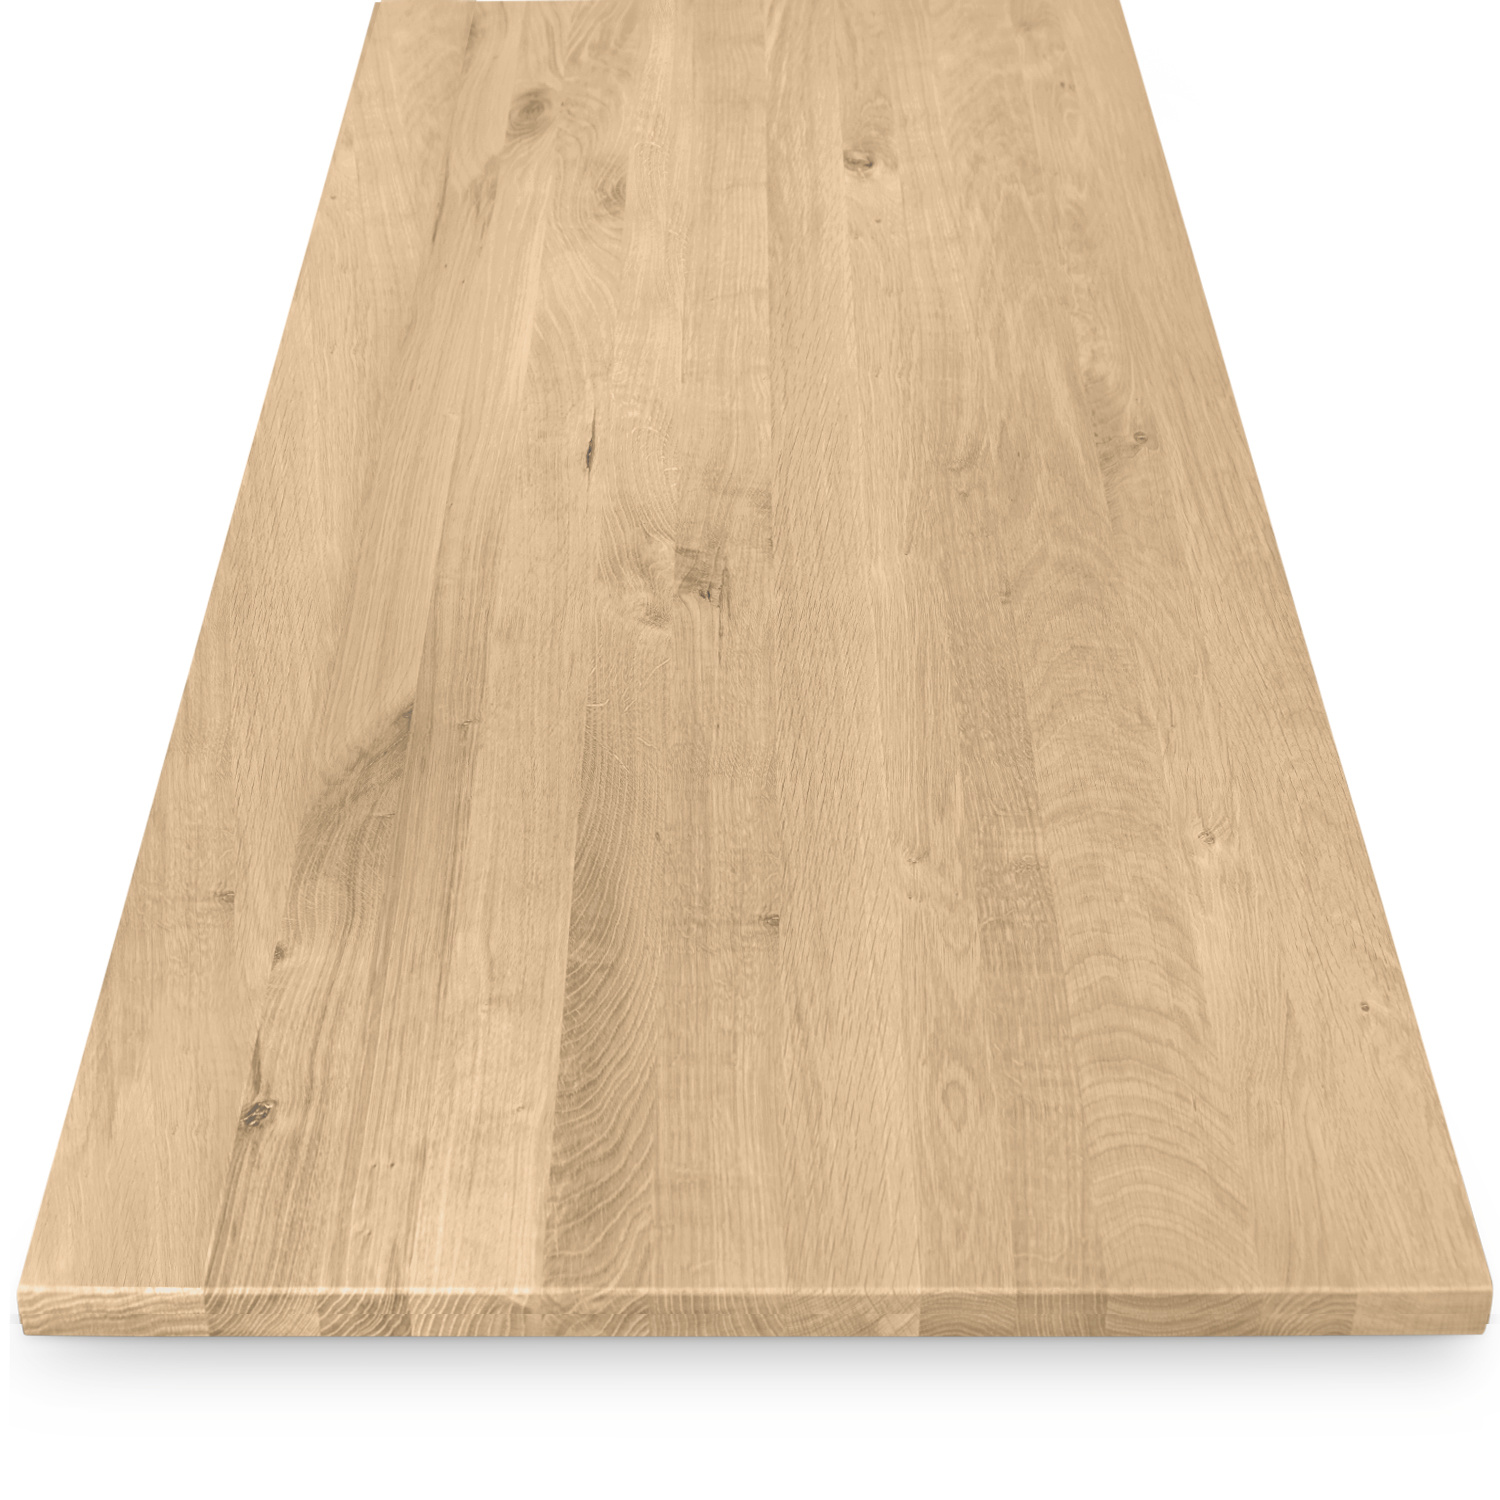  Tischplatte Eiche nach Maß - 2 cm dick - Eichenholz rustikal - Eiche Tischplatte massiv - verleimt & künstlich getrocknet (HF 8-12%) - 50-120x50-300 cm